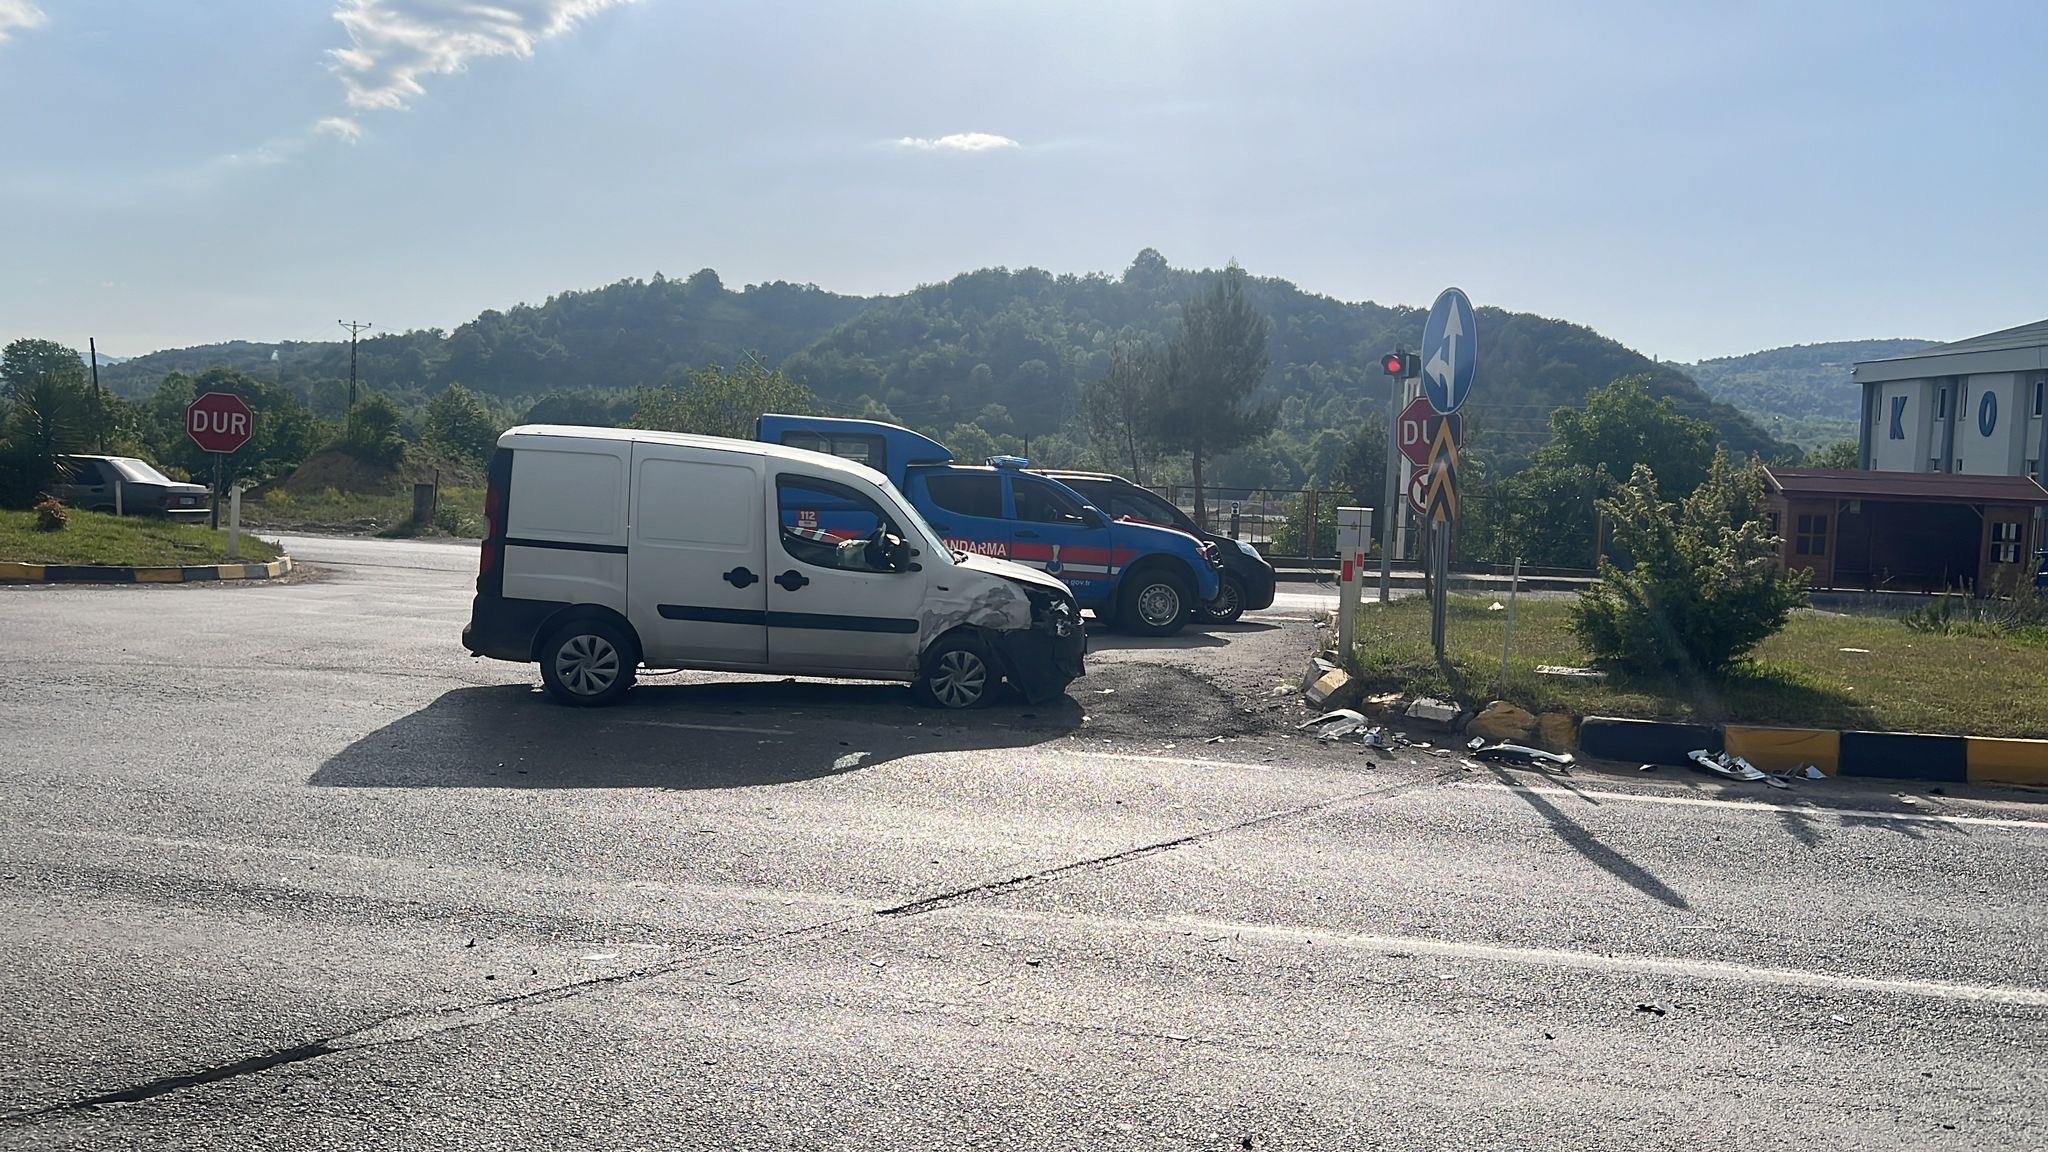 Zonguldak Ankara Karayolu Gökçebey Yol Ayrımında Trafik Kazası Meydana Geldi (1)